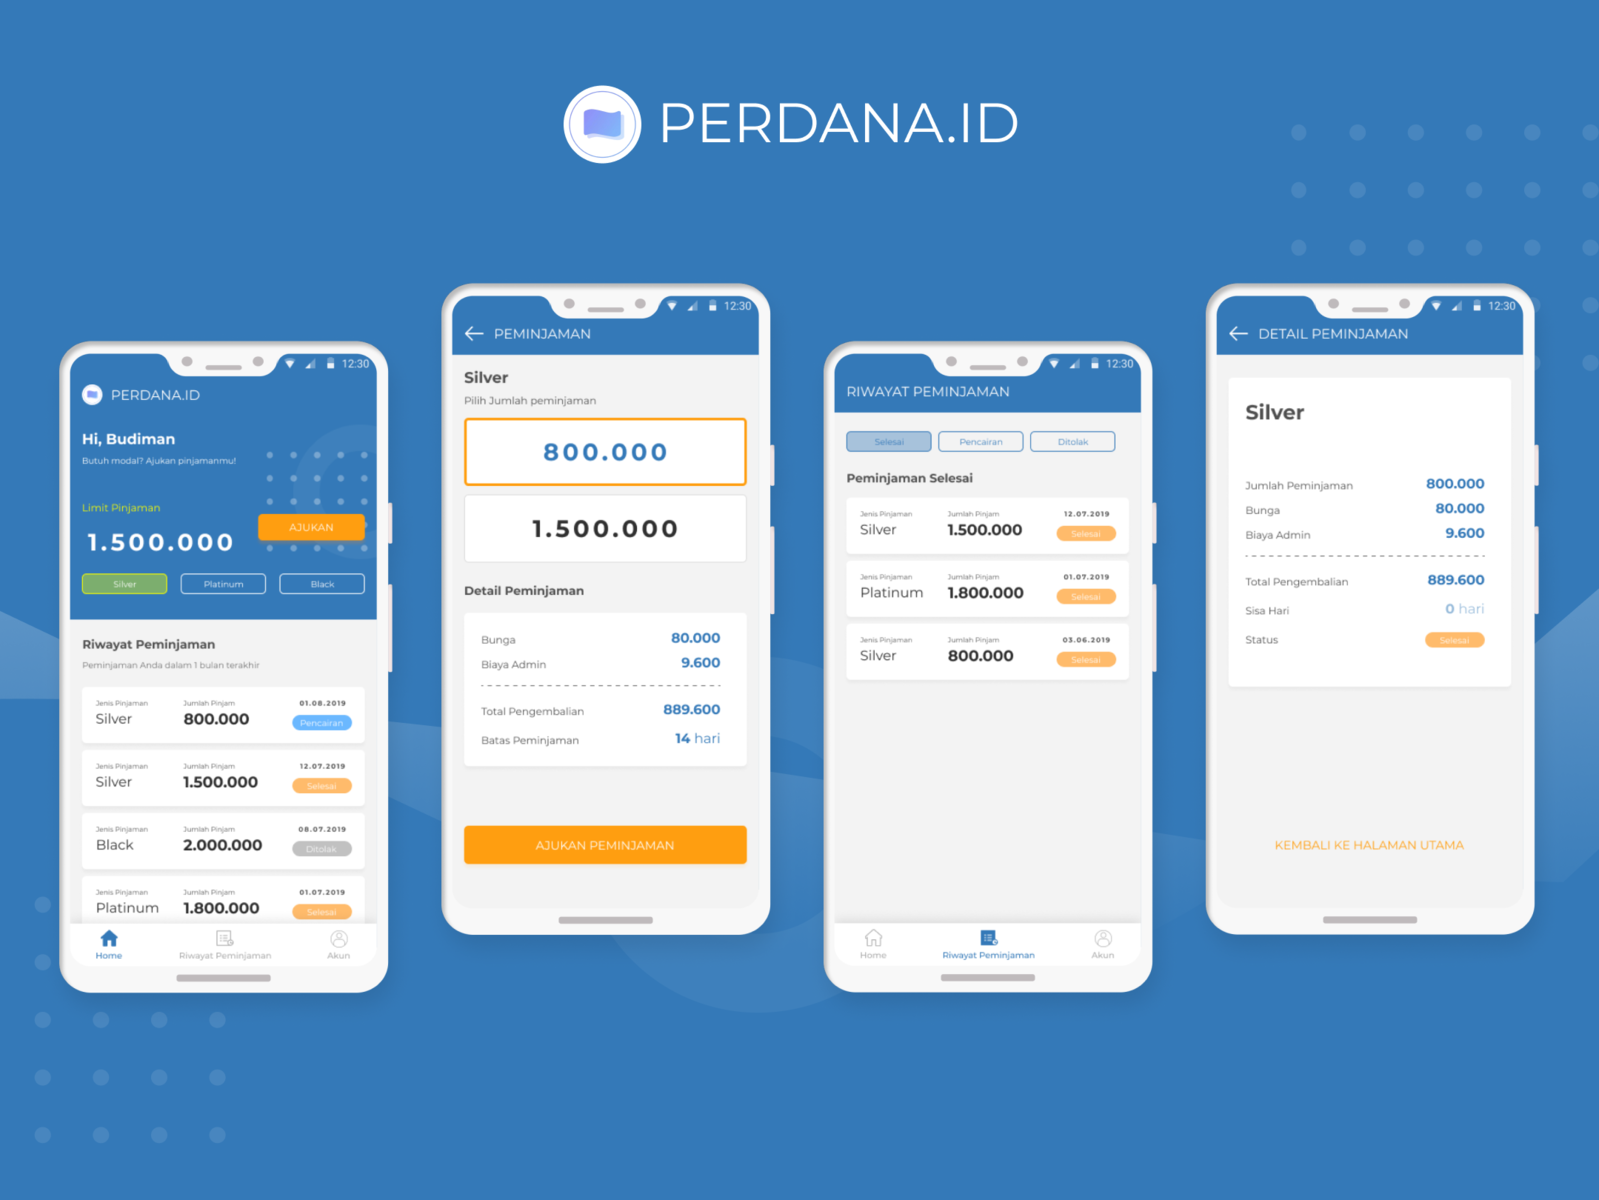 Loan Apps - Perdana.ID by Mayuga Wicaksana on Dribbble